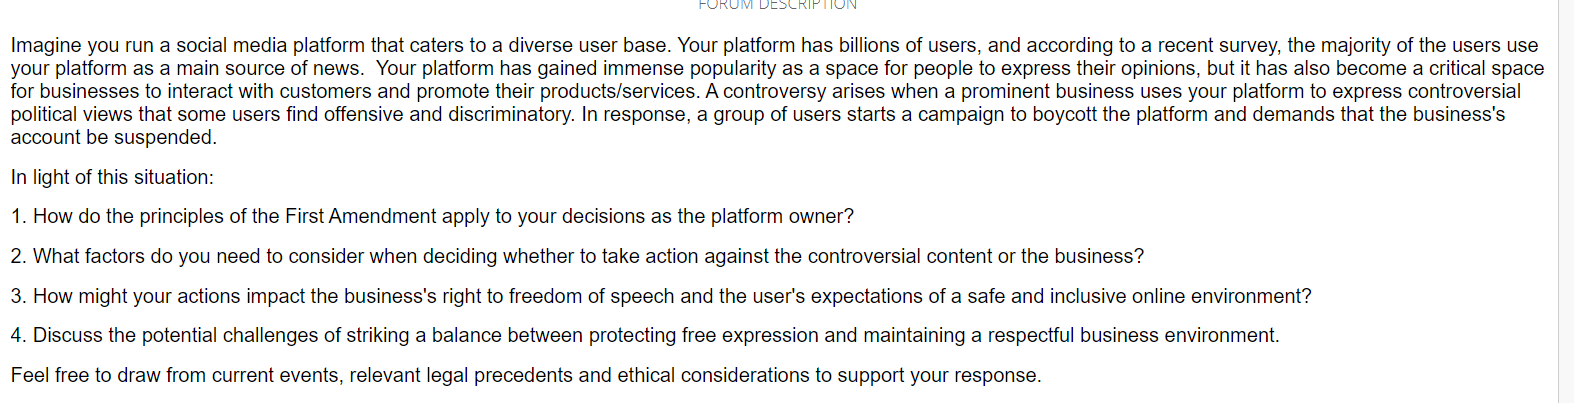 FORUM DESCRIPTION Imagine you run a social media platform that caters to a diverse user base. Your platform